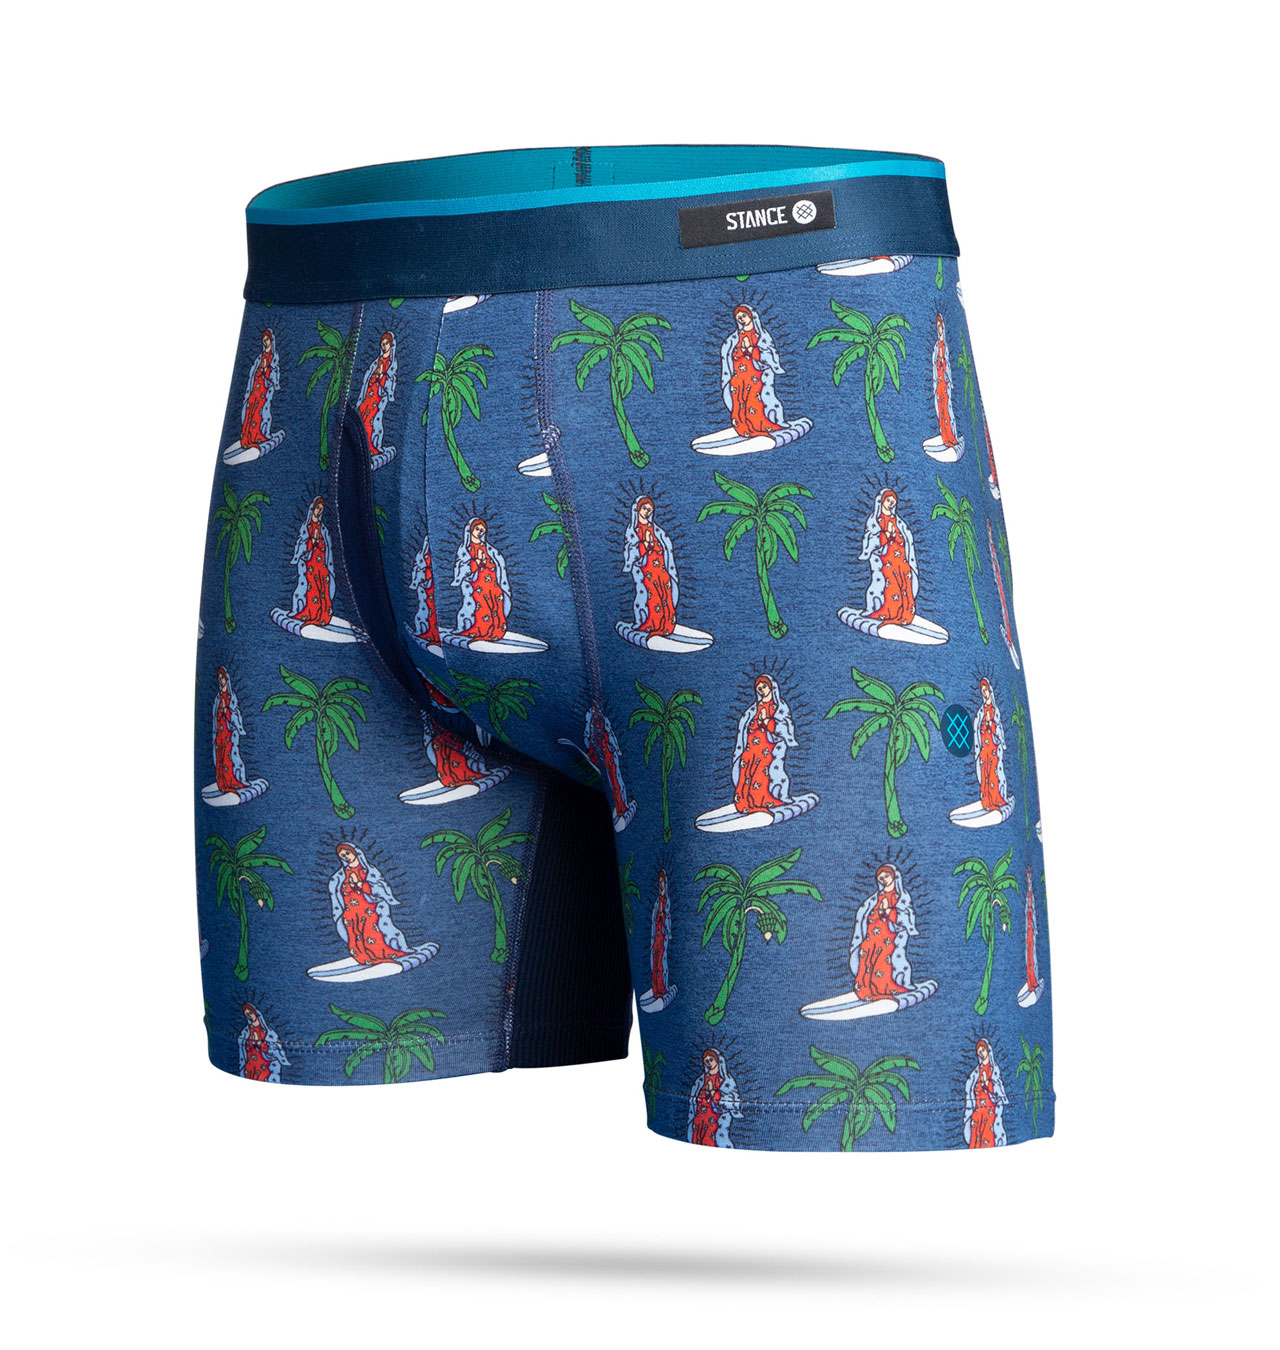 Stance - Mary Surfs Boxer Briefs Underwear